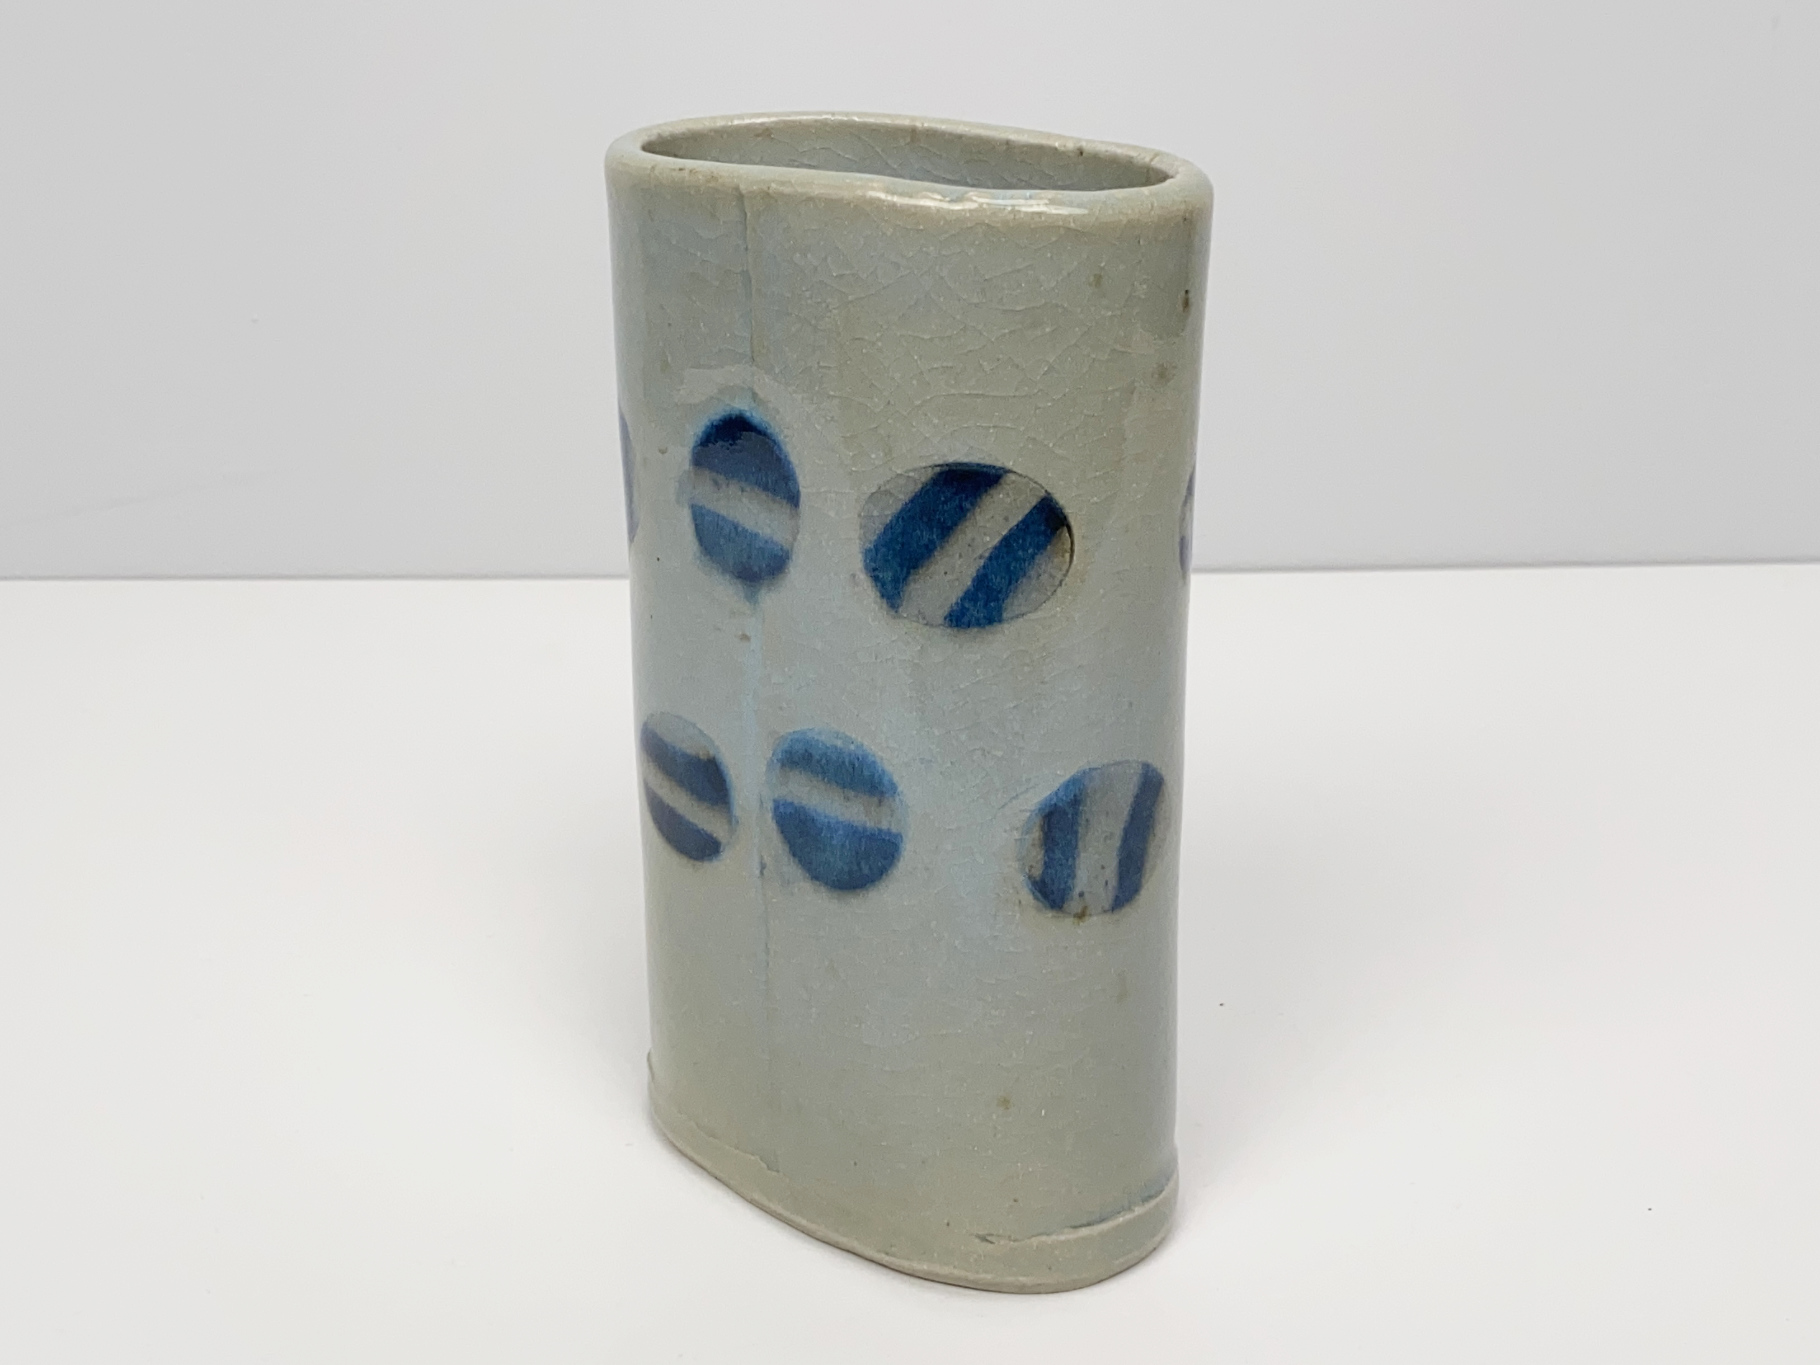 Vase, Porzellan, Unikat, eingearbeitete Dekorteile in kobaltblauer Farbe,  glasiert, von Wilhelm & Elly Kuch, 1970er Jahre